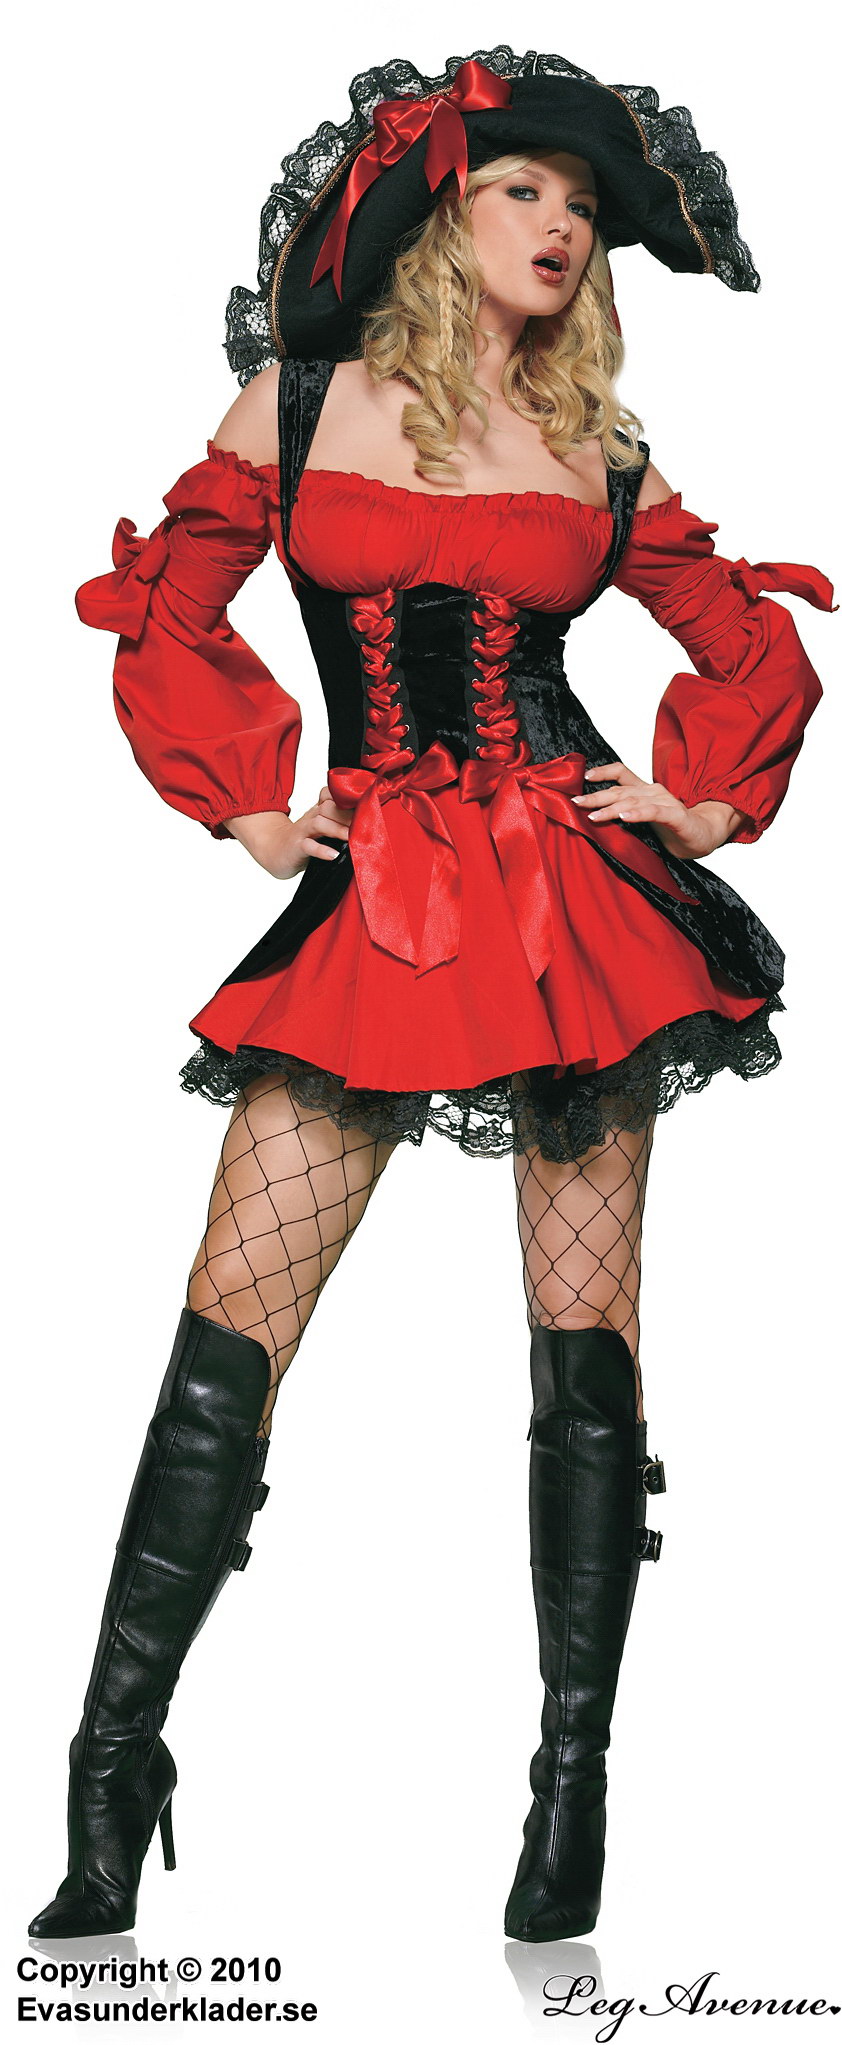 Weibliche Piratenkapitänin, Kostüm-Kleid, Schnürung, großes Schleife, Cold Shoulder